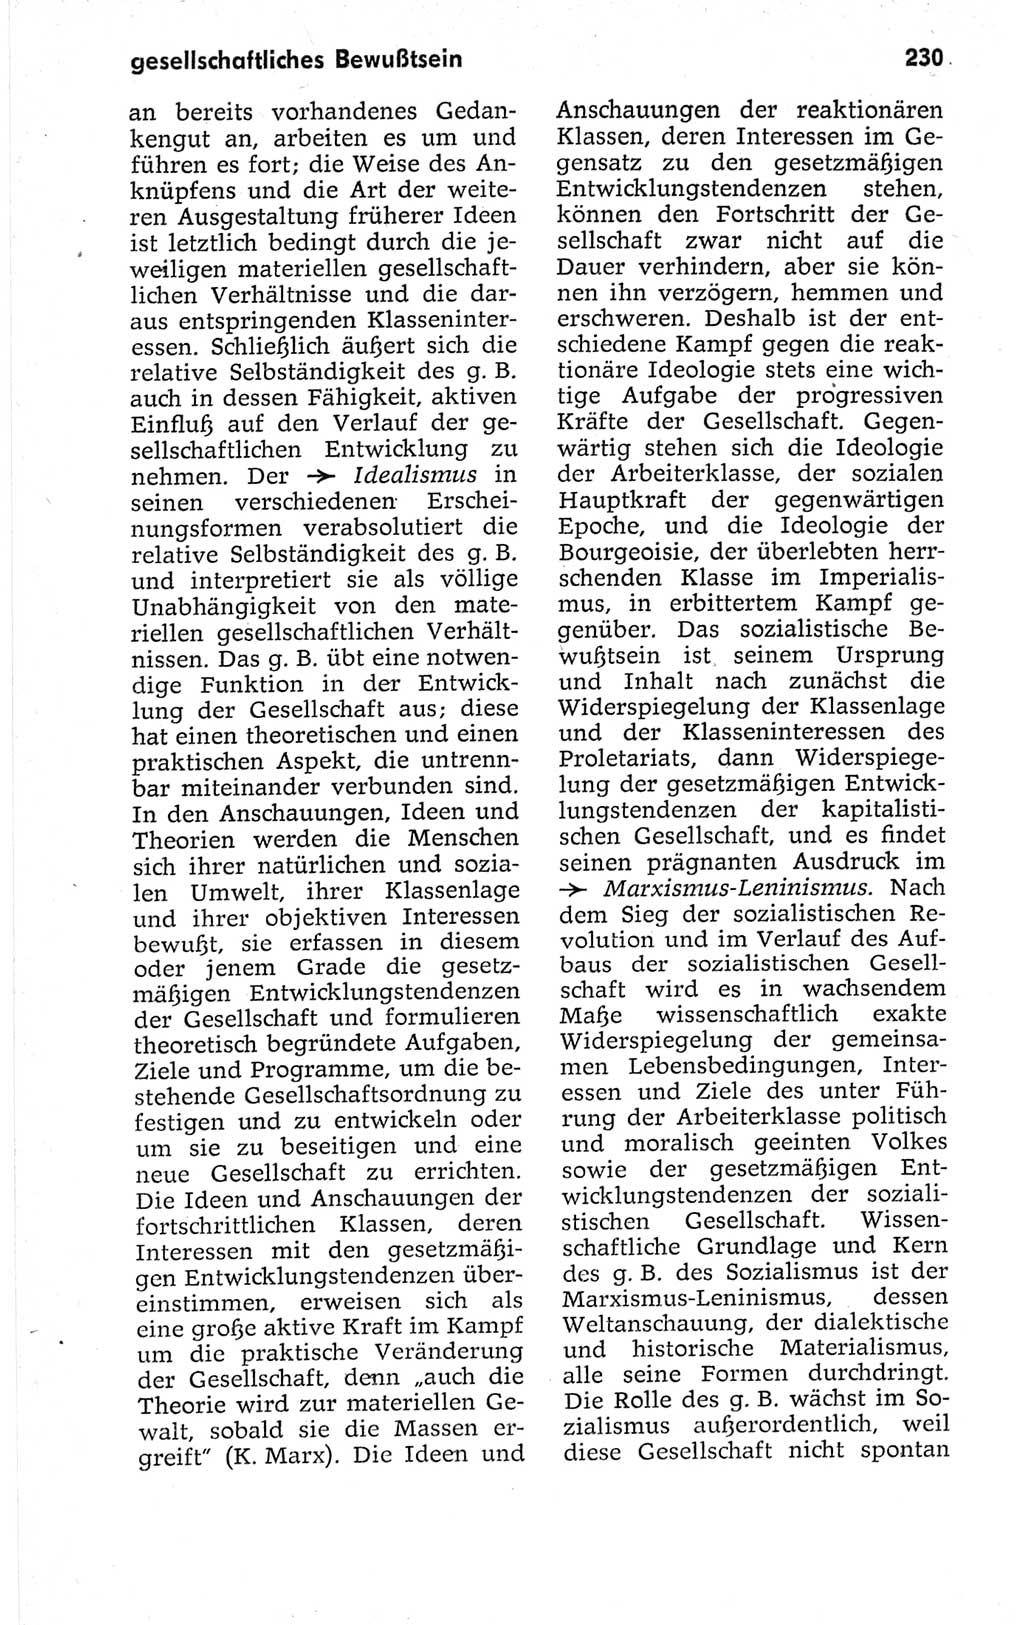 Kleines politisches Wörterbuch [Deutsche Demokratische Republik (DDR)] 1967, Seite 230 (Kl. pol. Wb. DDR 1967, S. 230)